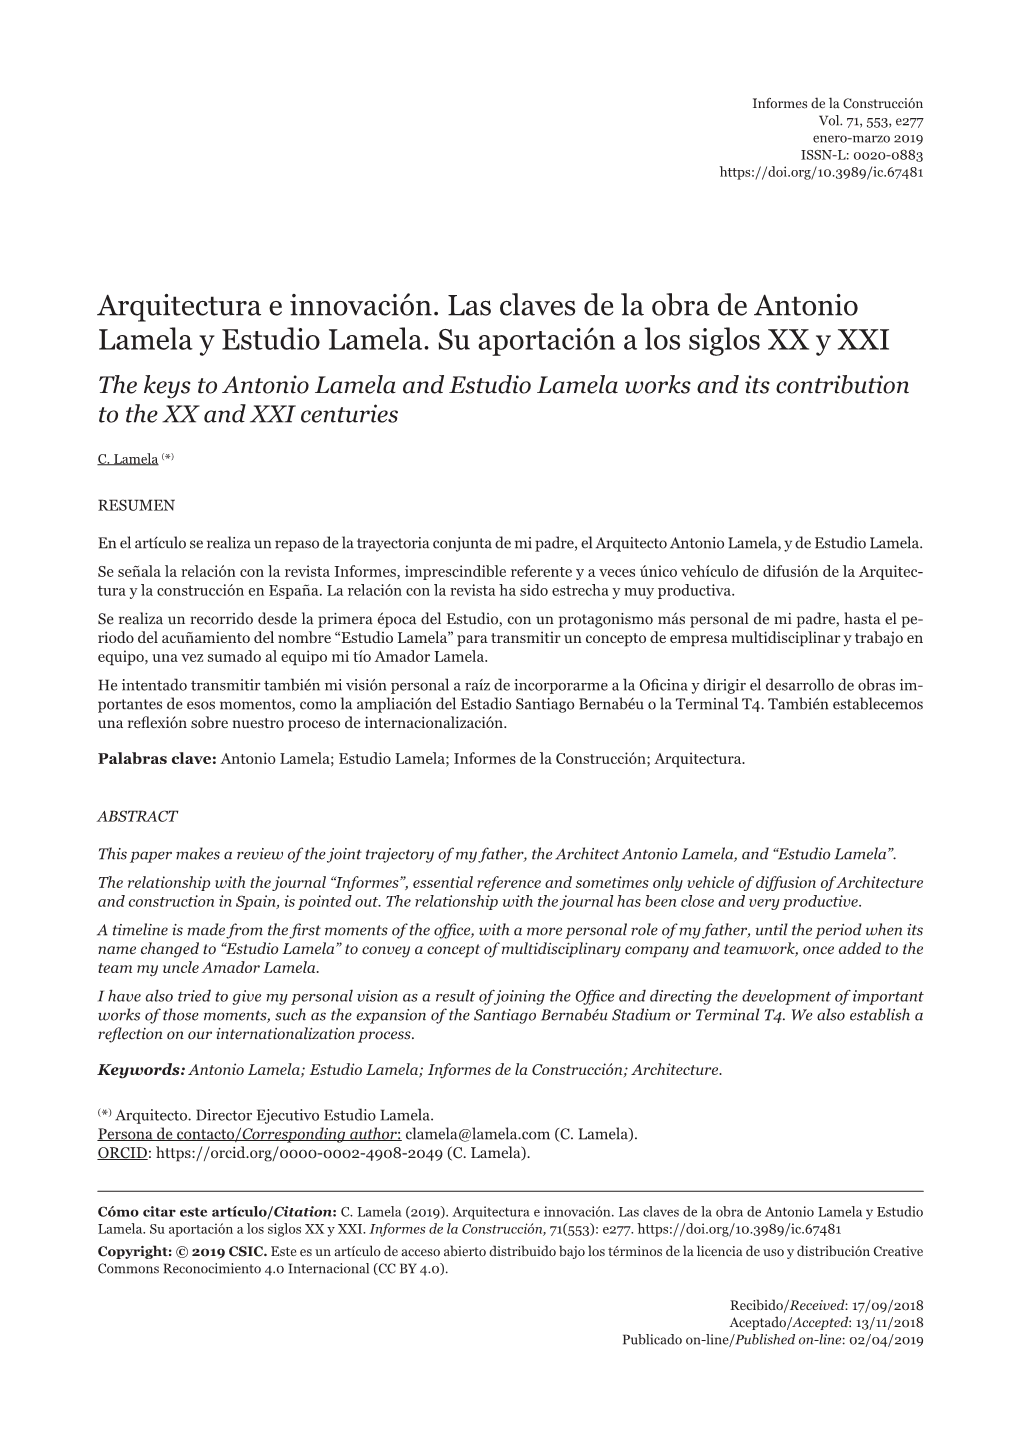 Arquitectura E Innovación. Las Claves De La Obra De Antonio Lamela Y Estudio Lamela